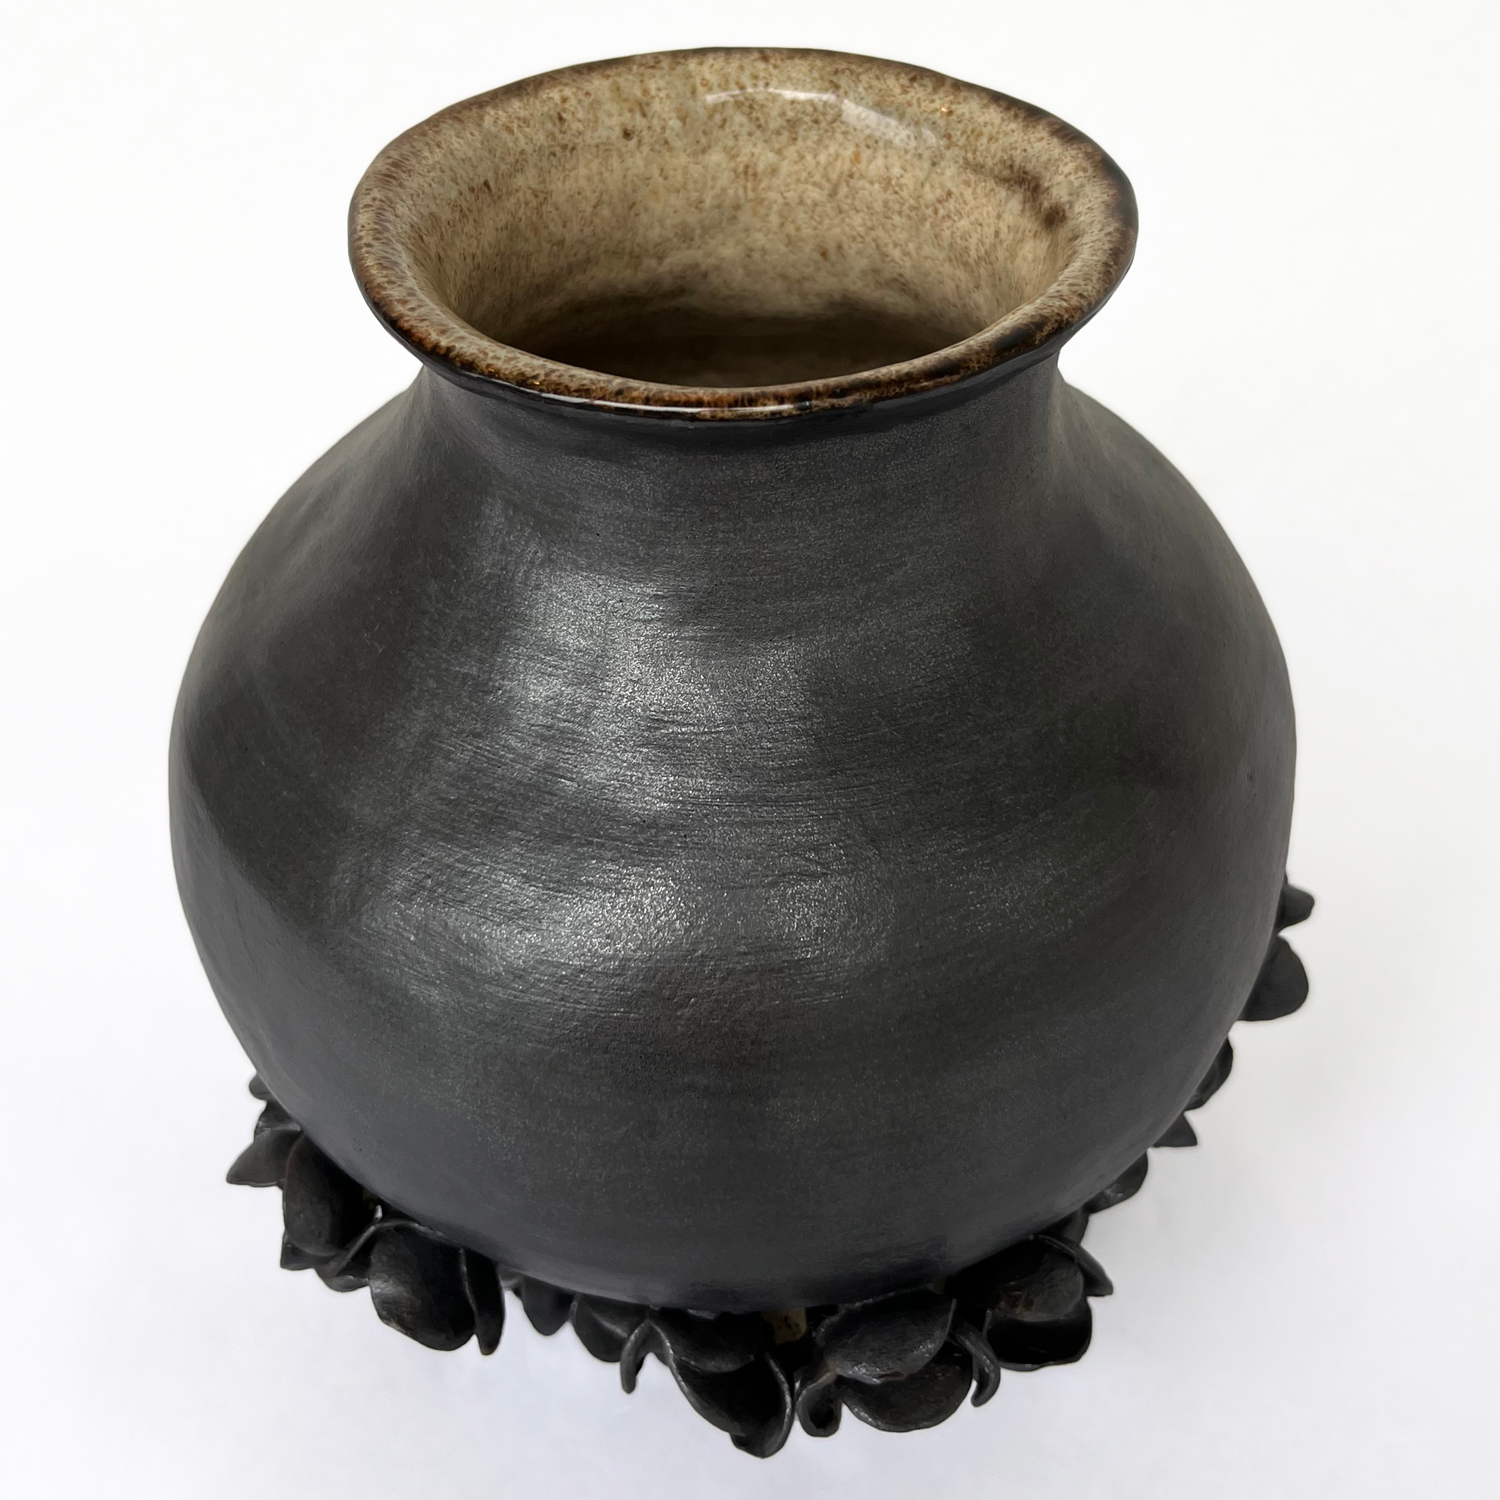 Mariana Bolanos Inclan: Large Flower Vase Product Image 2 of 2